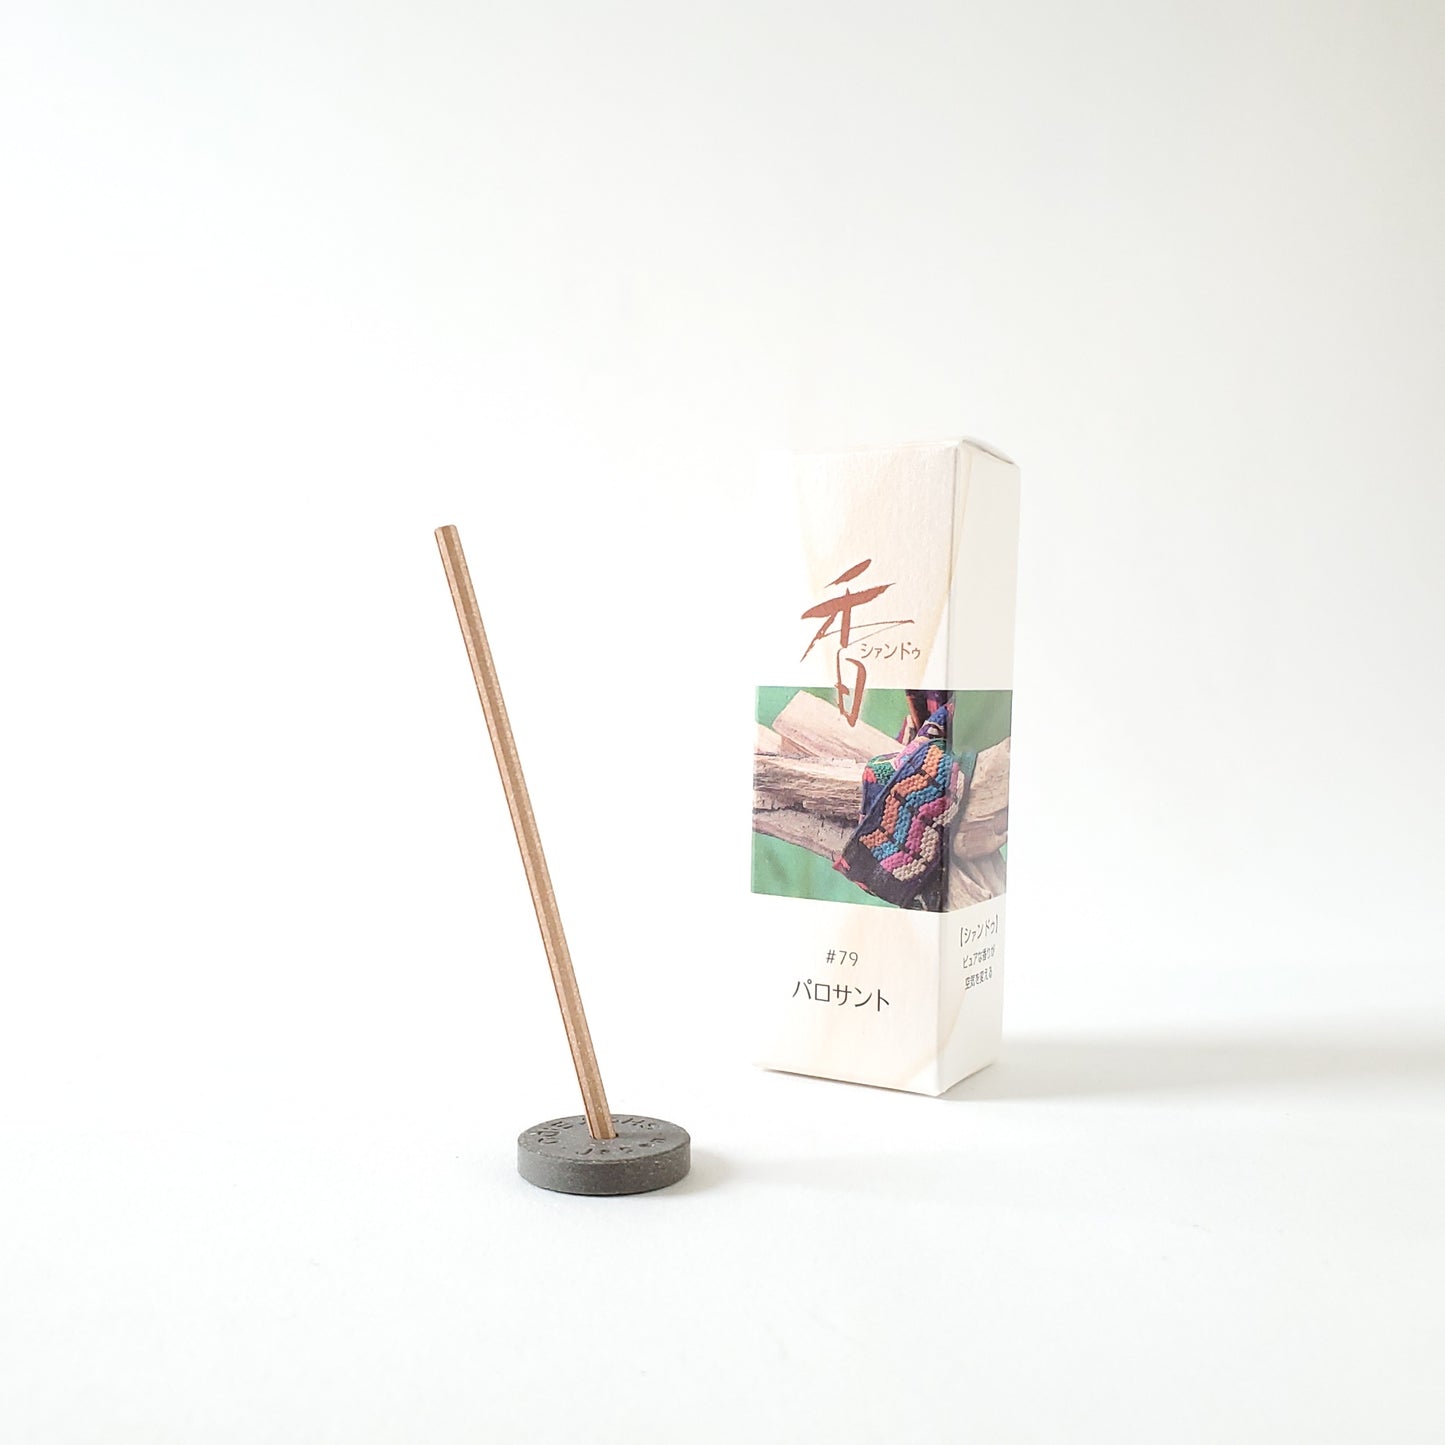 松栄堂のお香 シァンドゥ・パロサント Xiang Do 京都 スティック アロマ インセンス 日本製